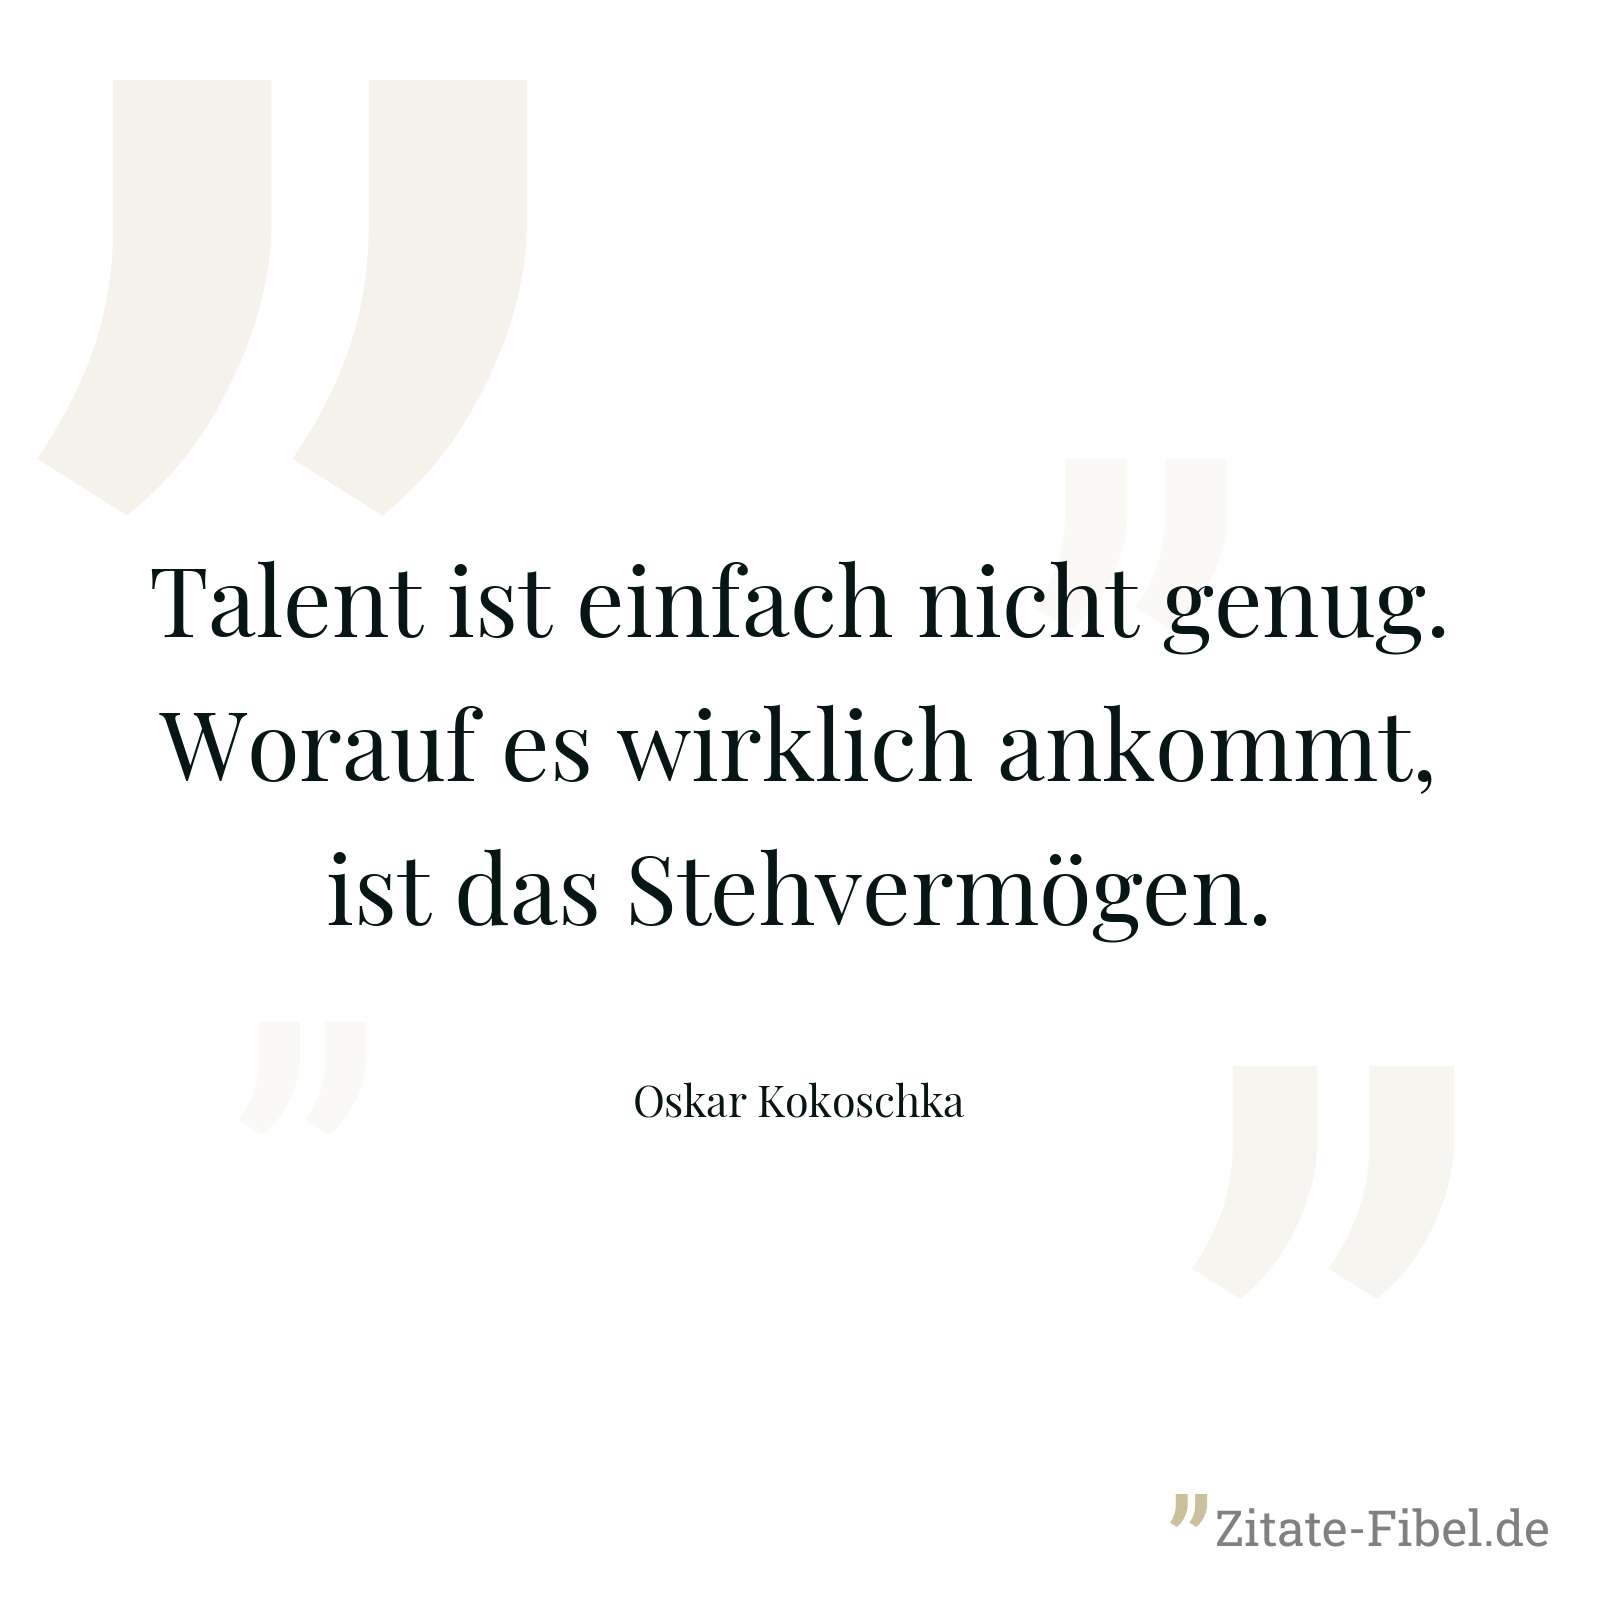 Talent ist einfach nicht genug. Worauf es wirklich ankommt, ist das Stehvermögen. - Oskar Kokoschka